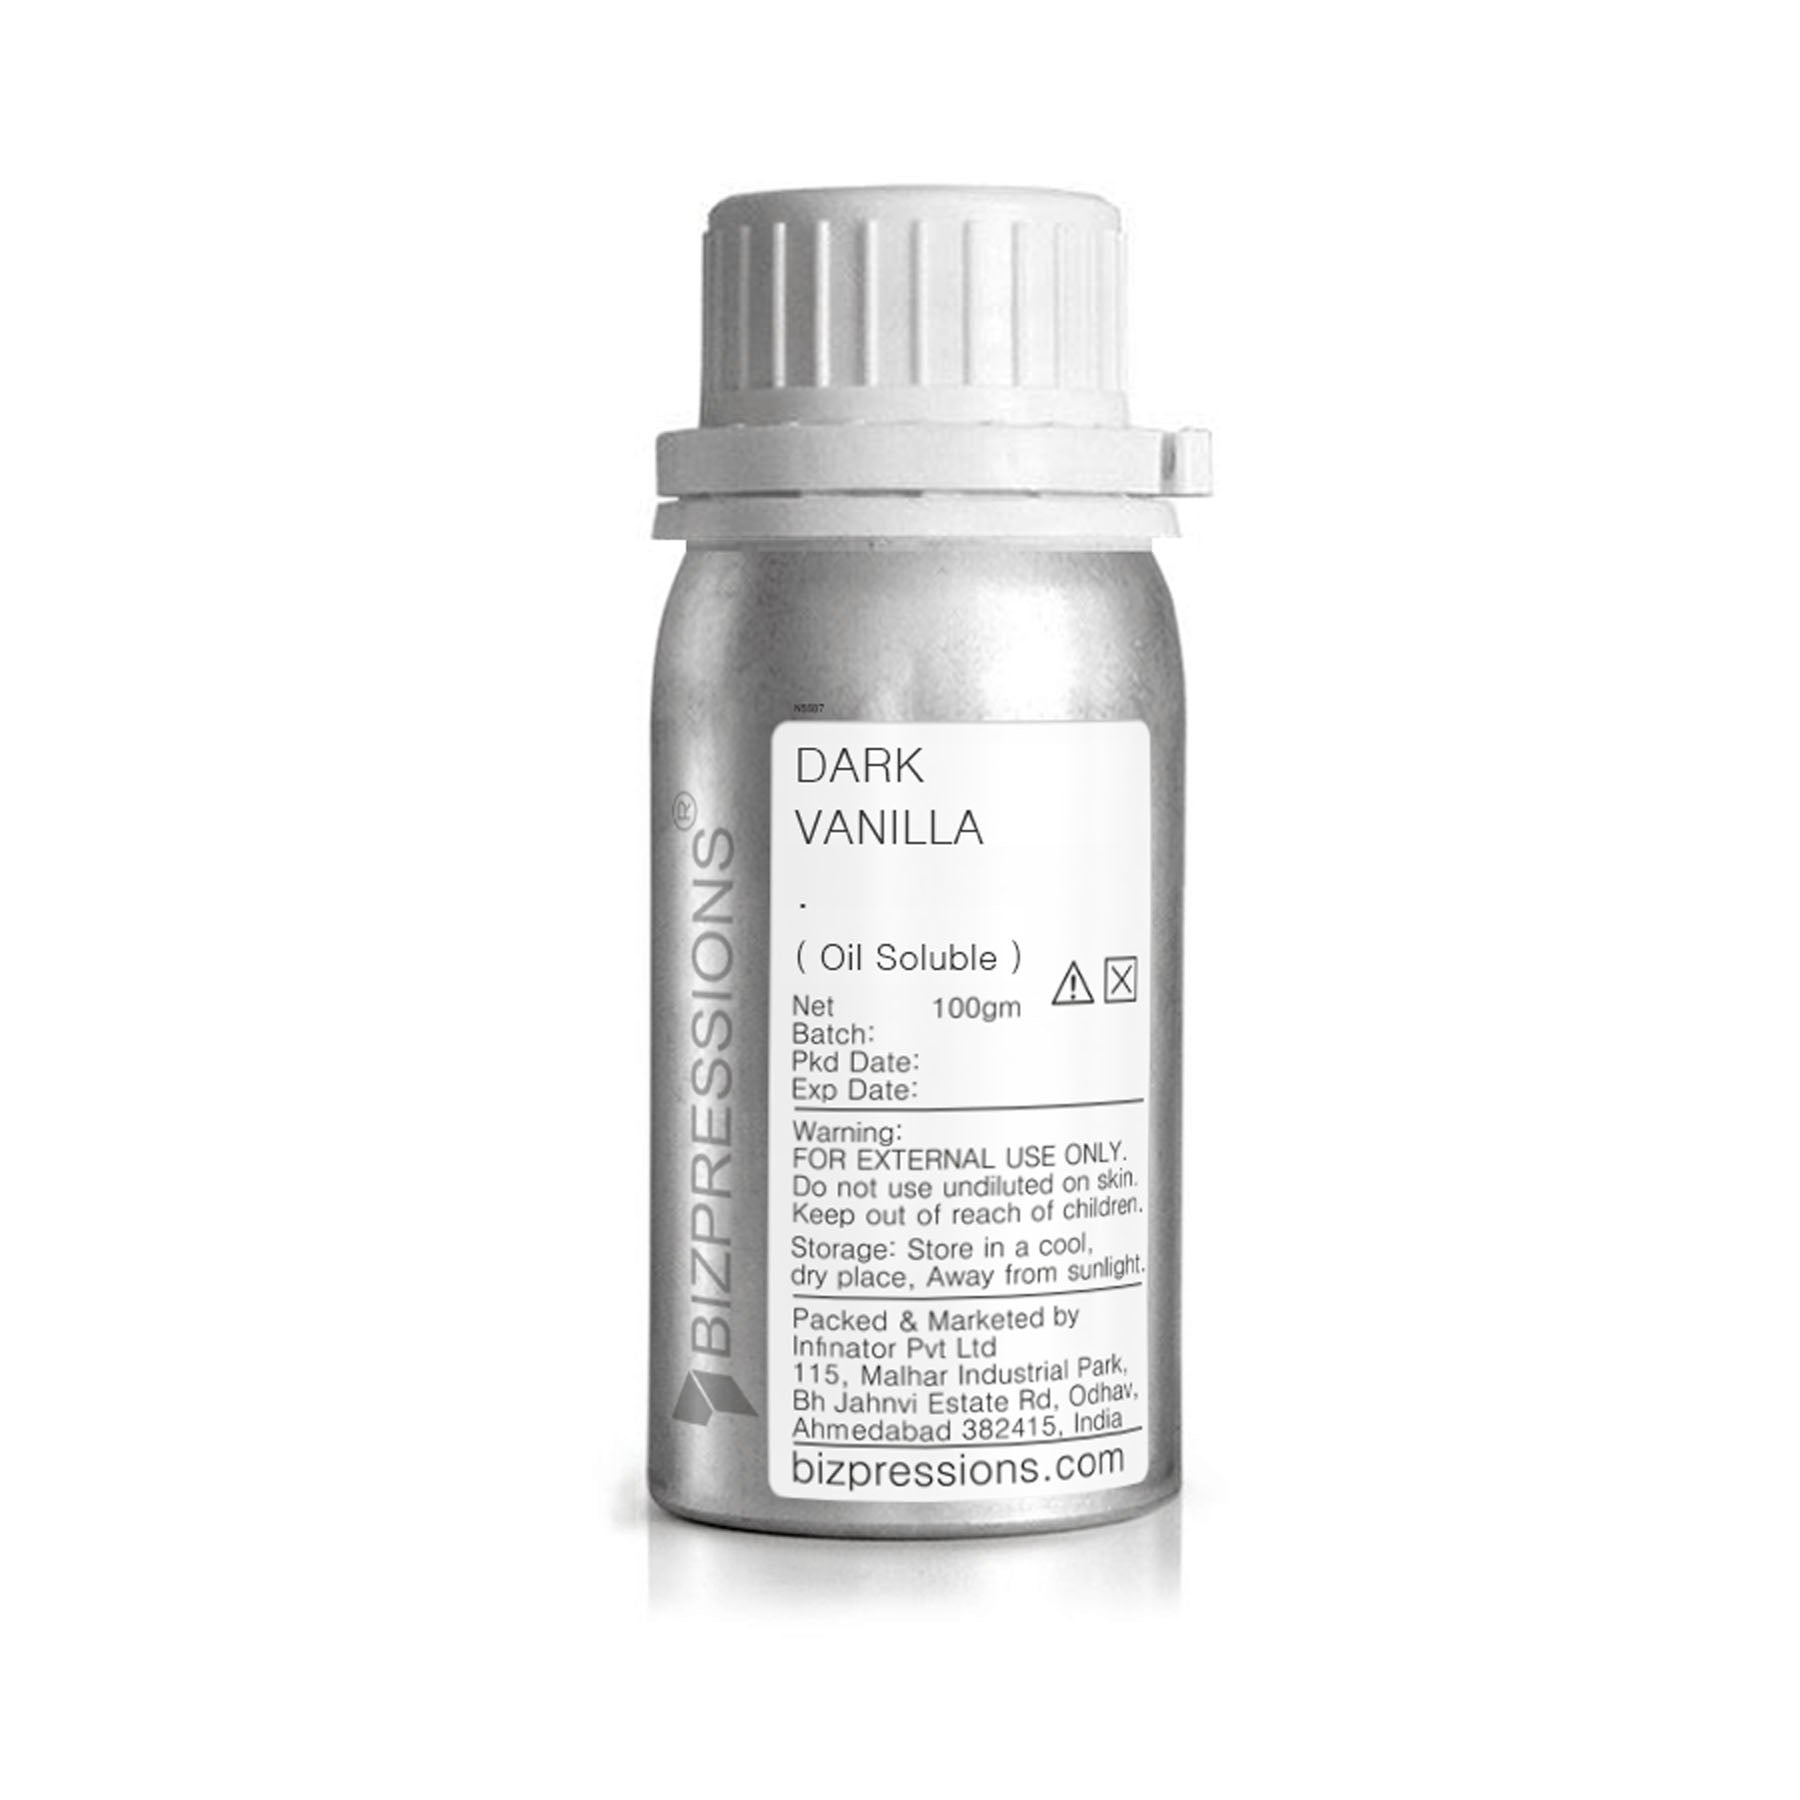 DARK VANILLA - Fragrance ( Oil Soluble ) - 100 gm